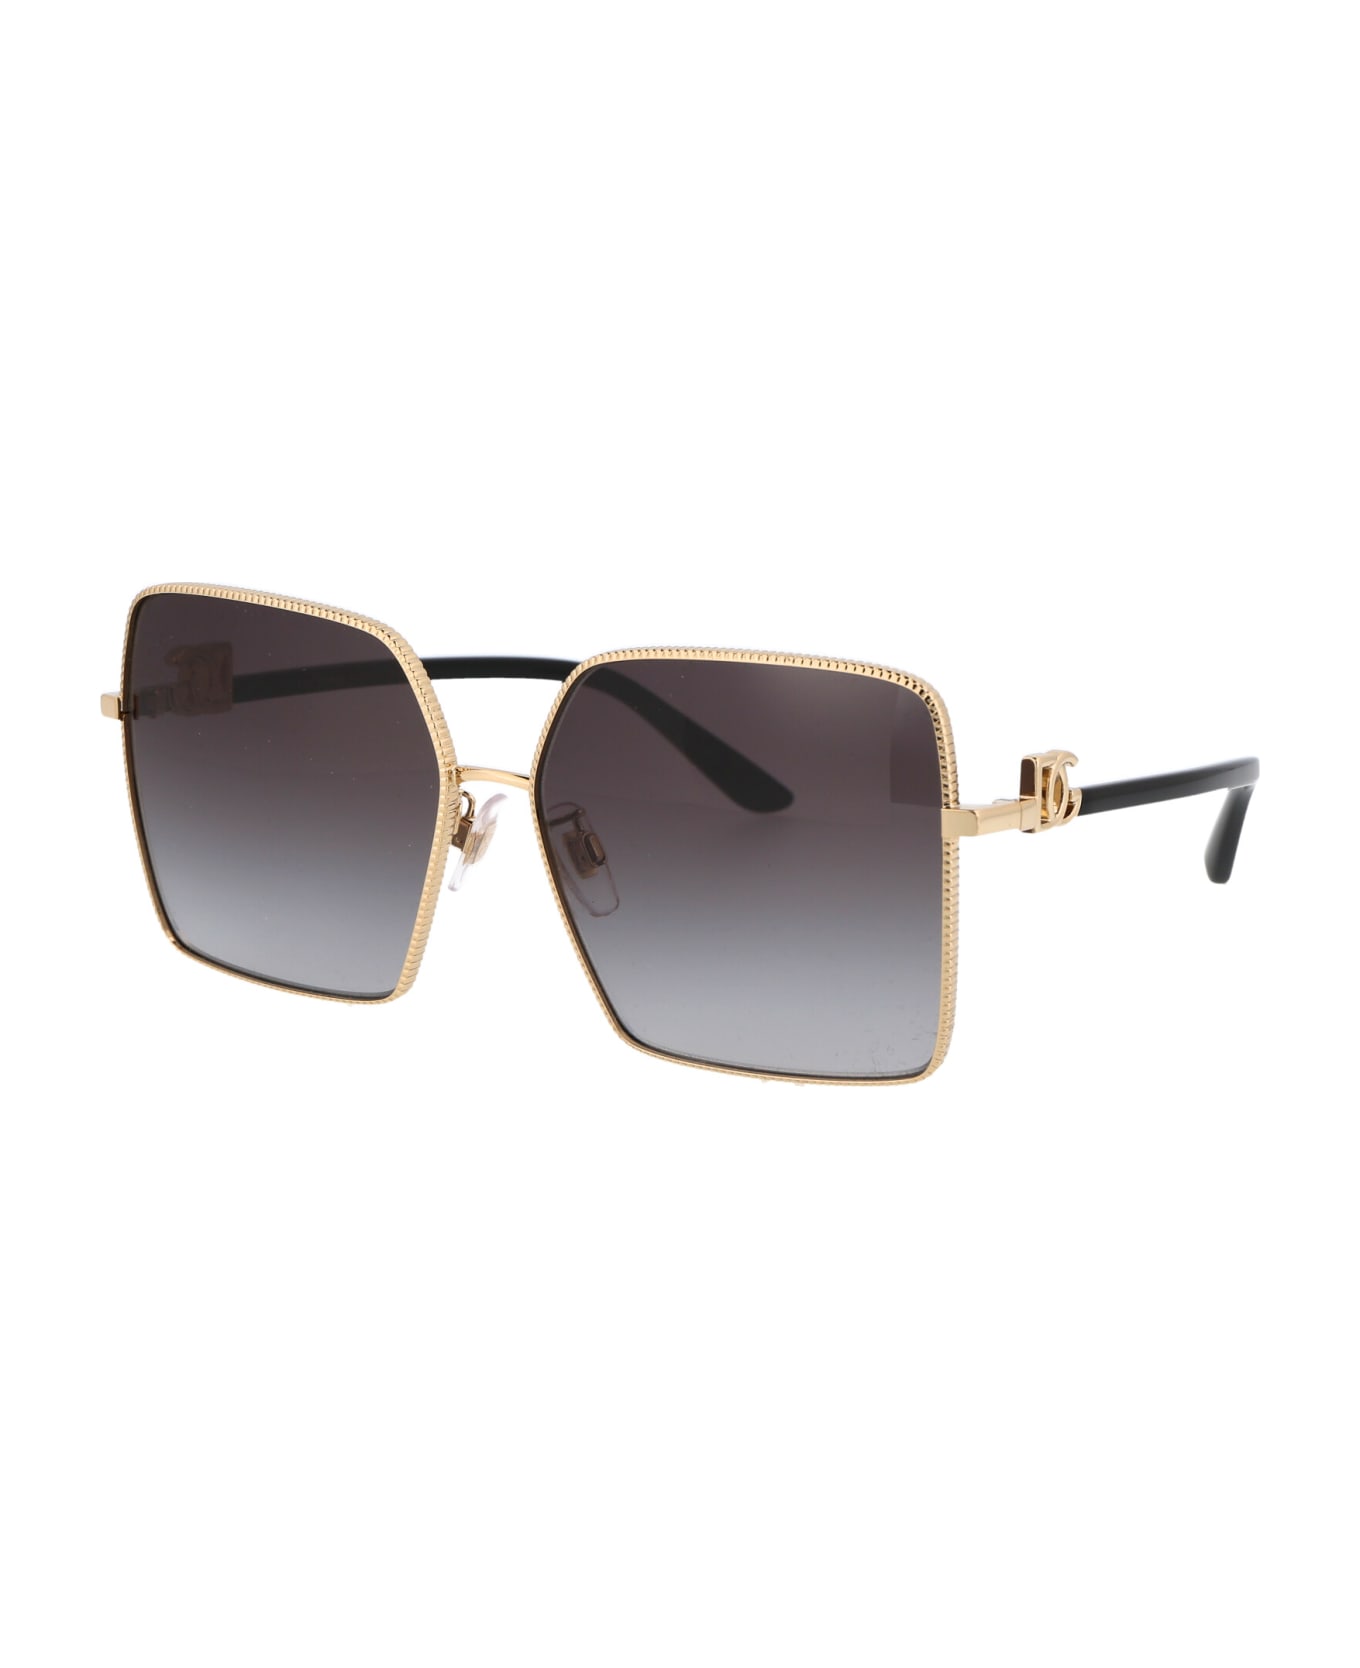 Dolce & Gabbana Eyewear 0dg2279 Sunglasses - 02/8G GOLD